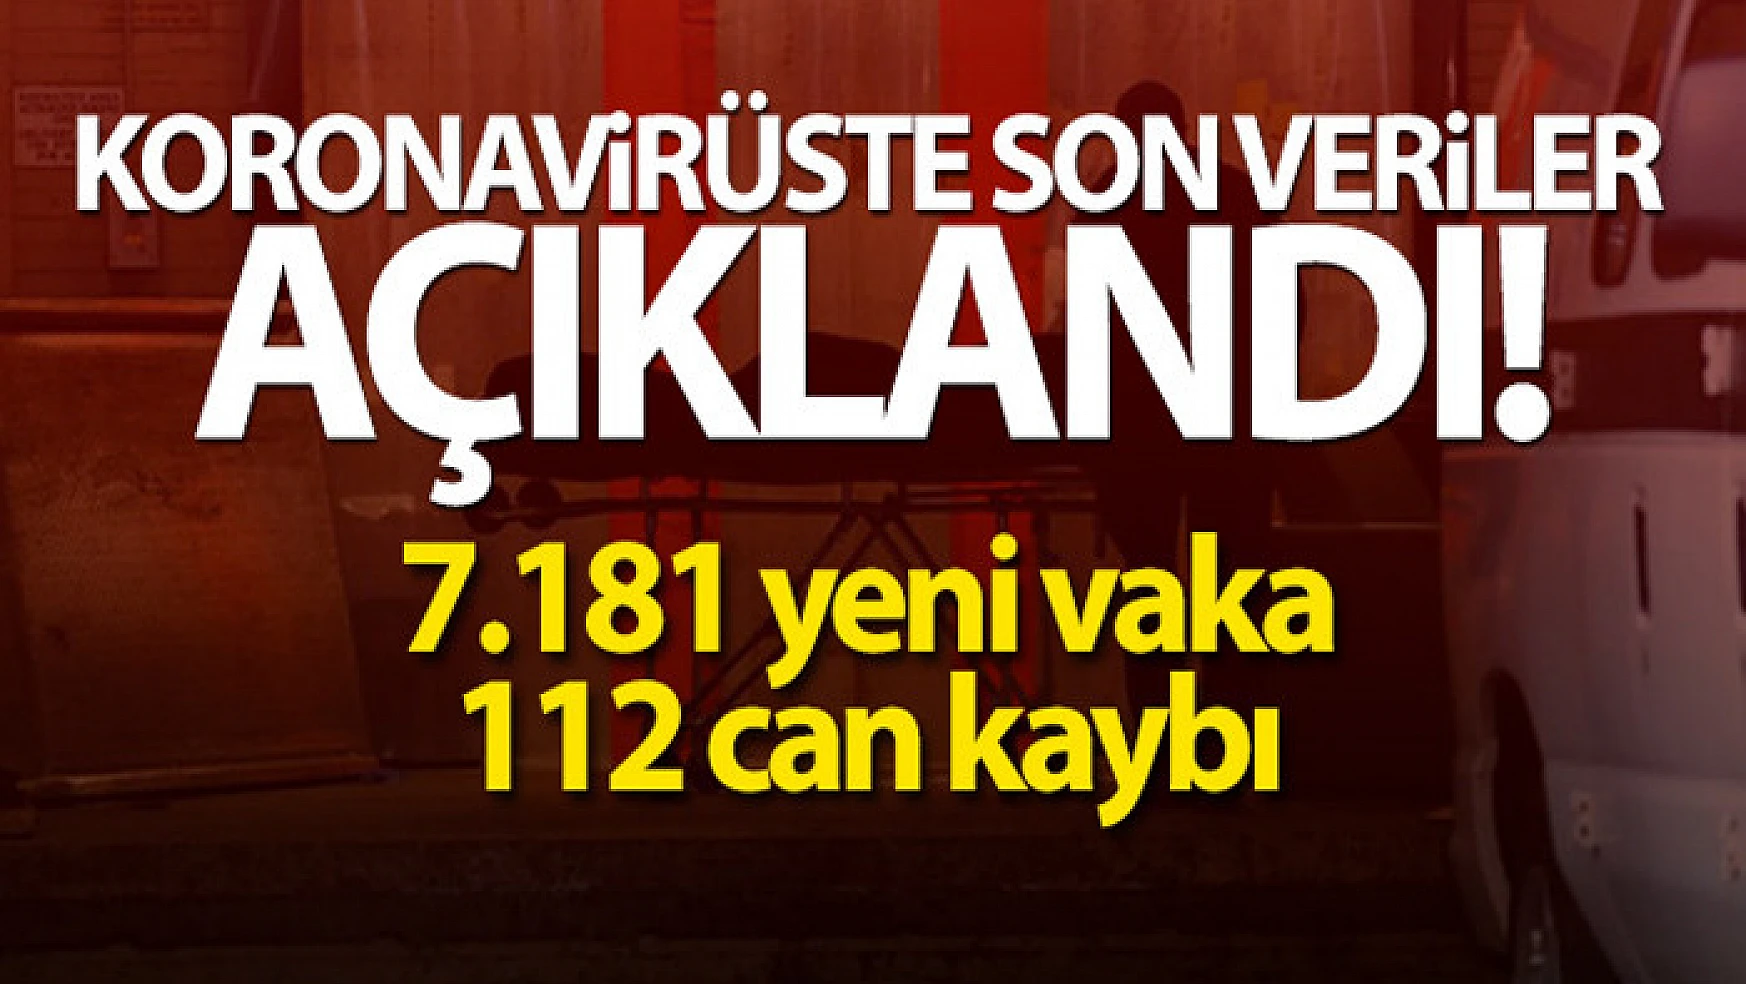 Türkiye'de son 24 saatte 7.181 koronavirüs vakası tespit edildi